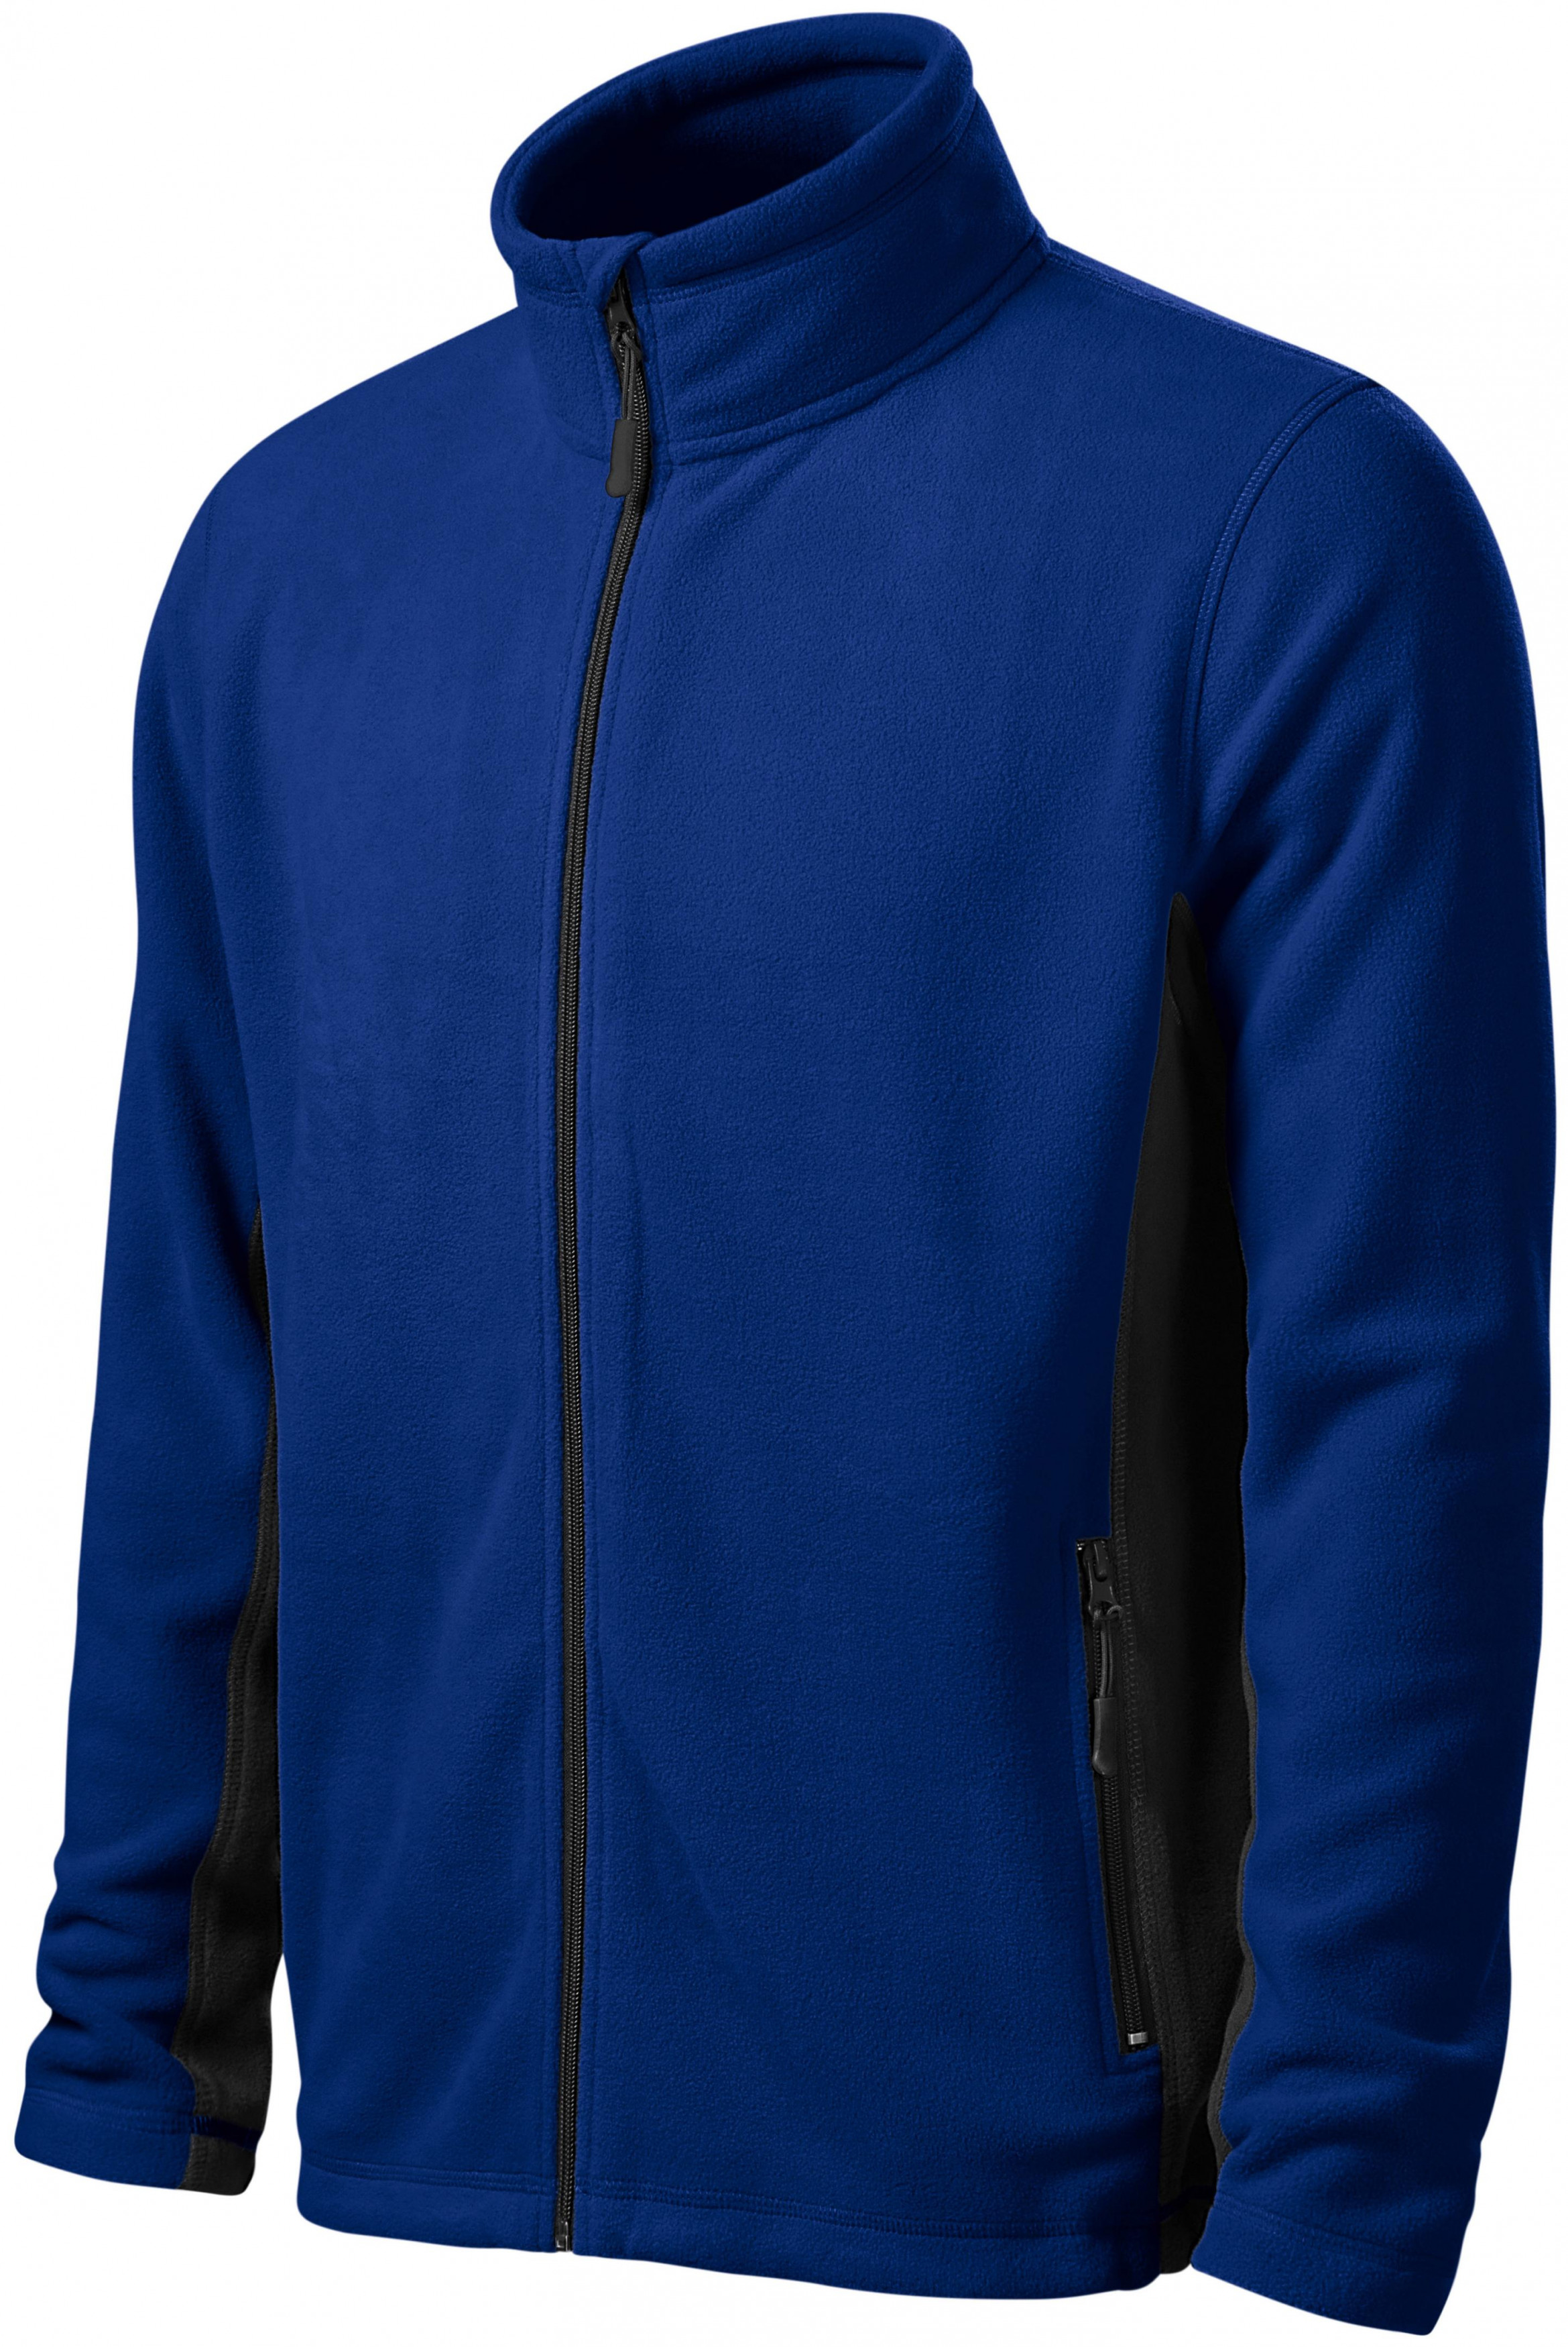 Pánska fleecová bunda kontrastná, kráľovská modrá, 3XL